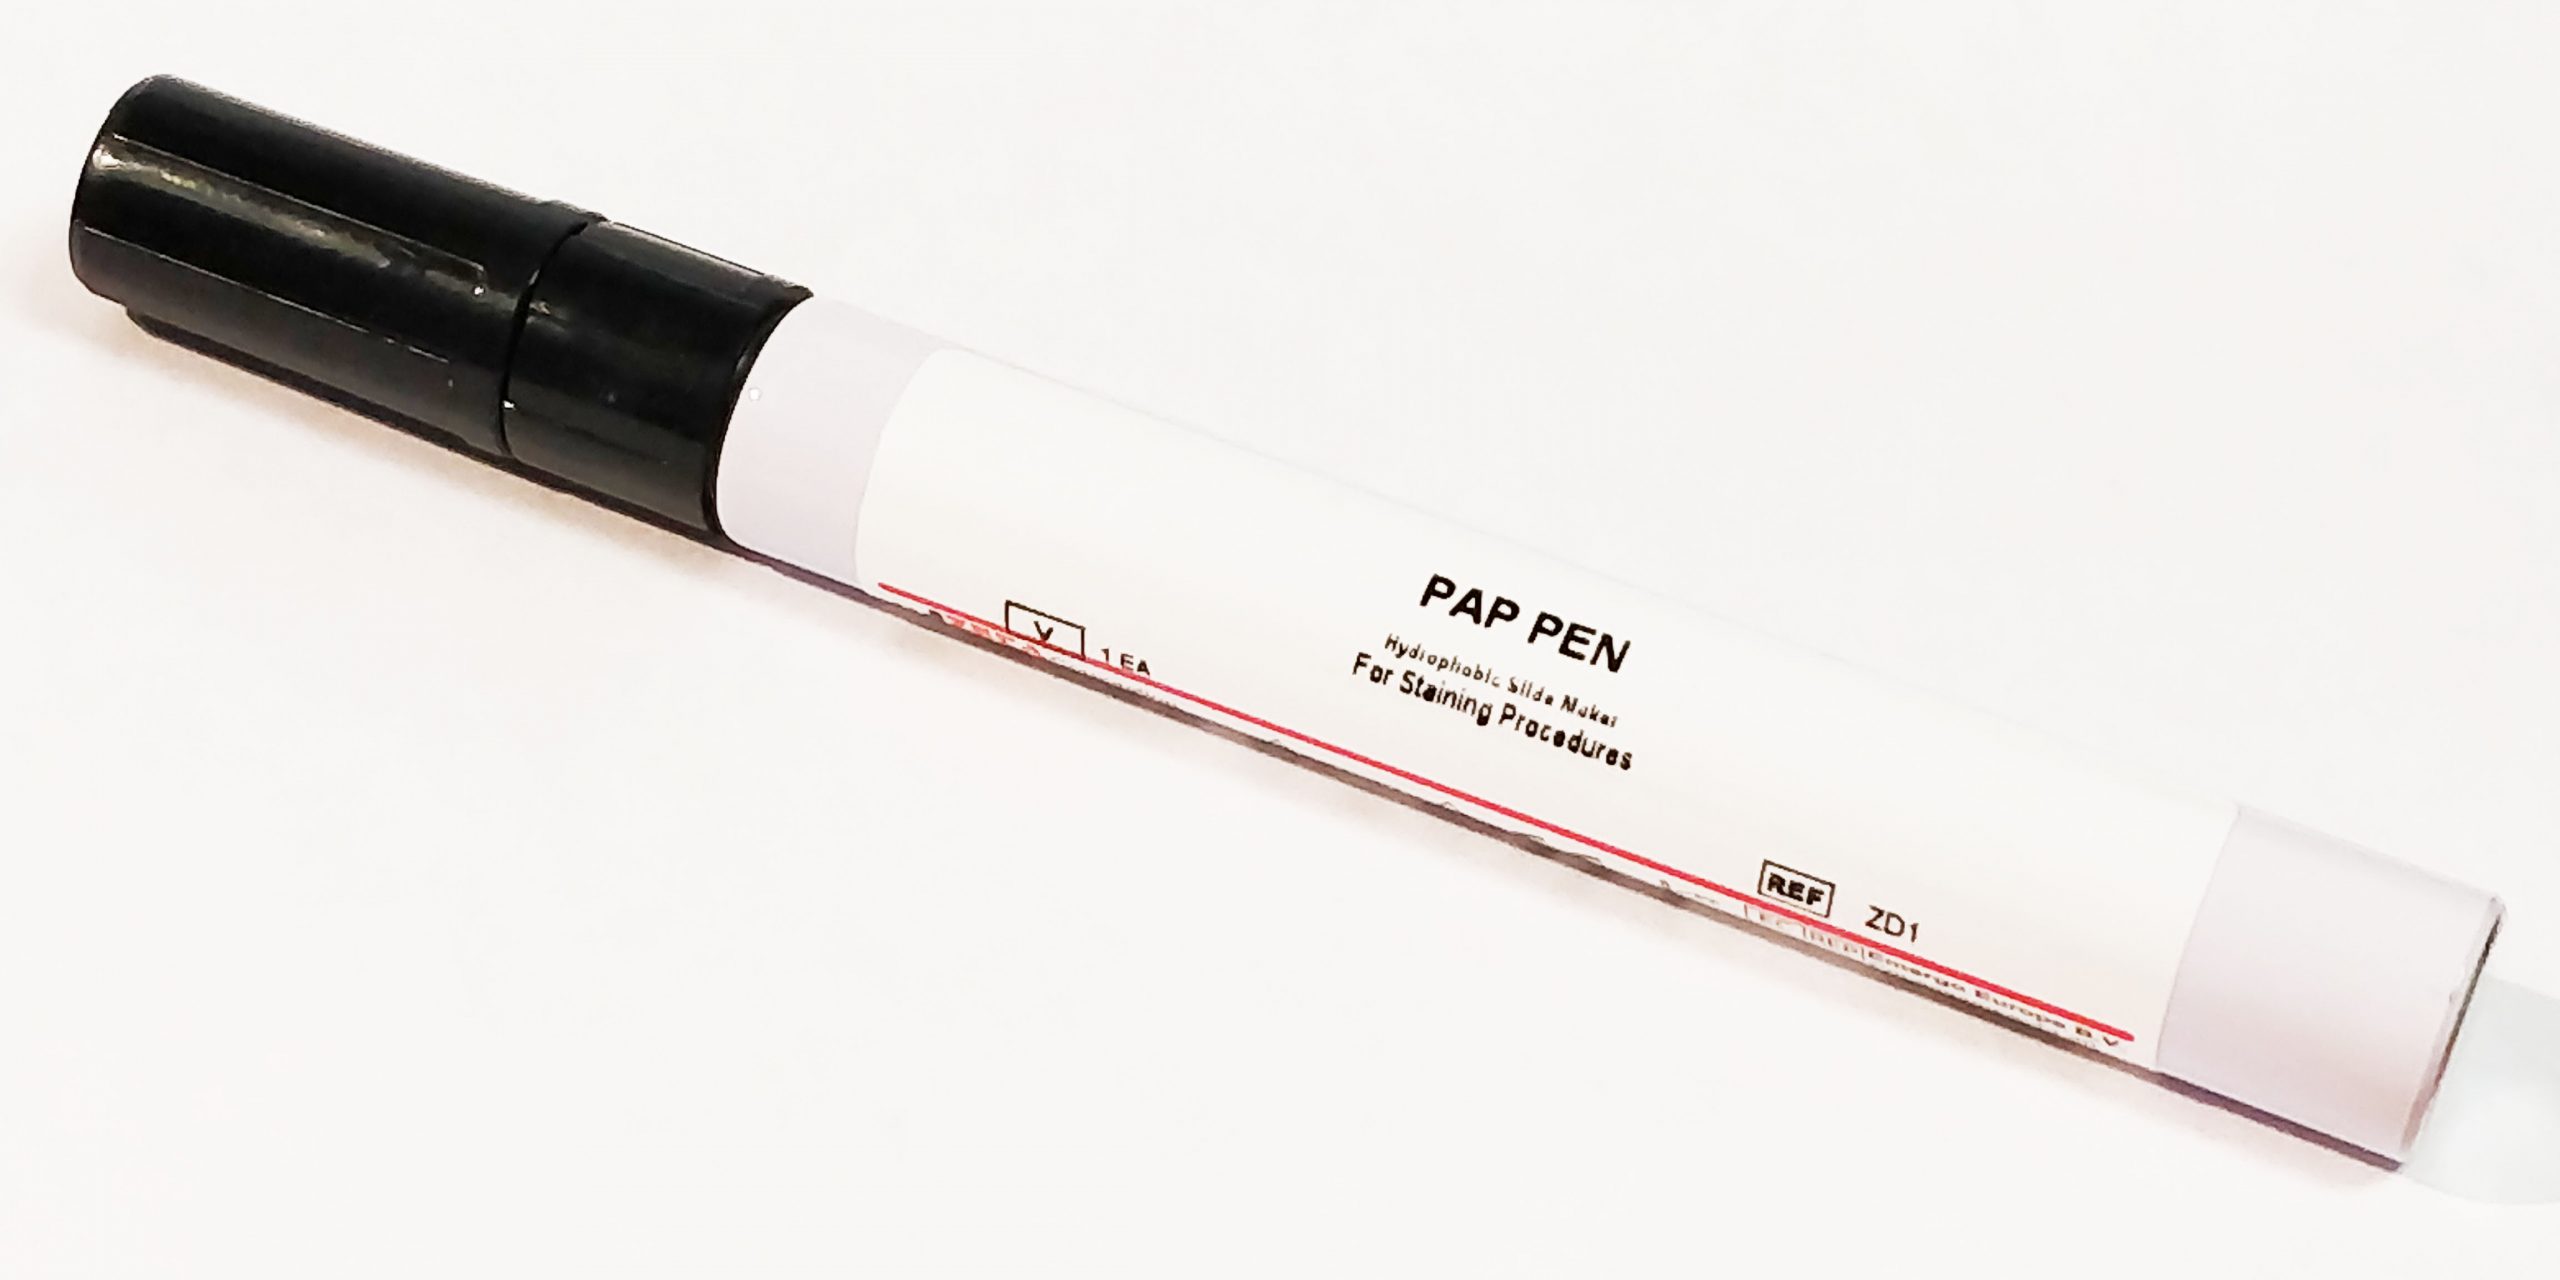 Zeta PAP Pen - Zeta Corporation